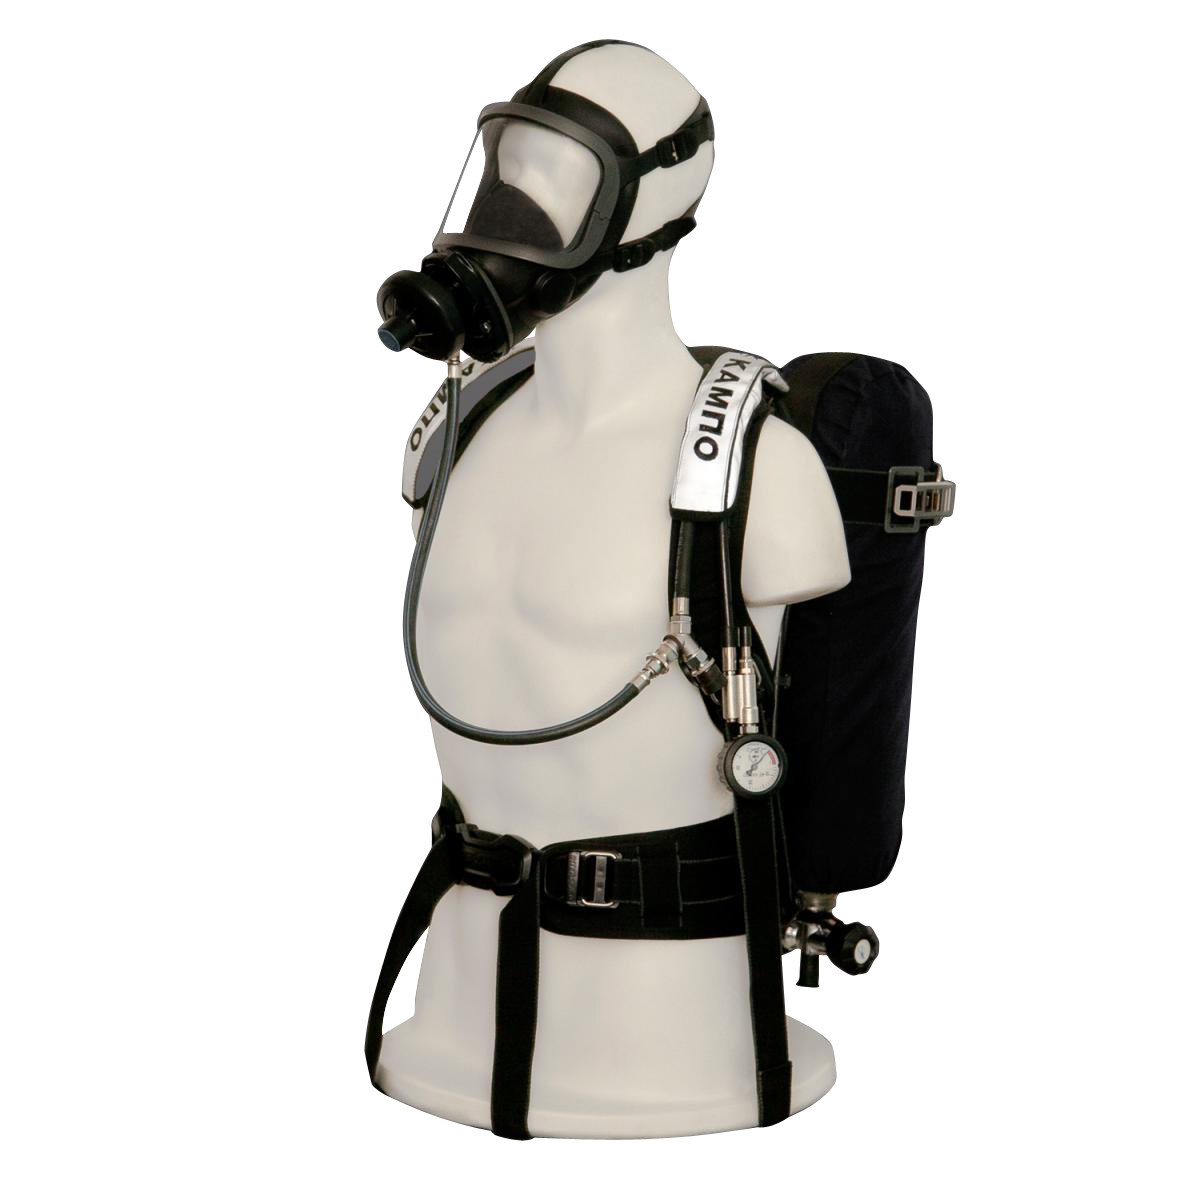 Индивидуальный дыхательный аппарат. Ап 98 7к дыхательный аппарат. Омега изолирующий дыхательный аппарат. Аппарат дыхательный ап-98-7к исп.2-м7-00. Ап-98-7км дыхательный аппарат со сжатым воздухом.